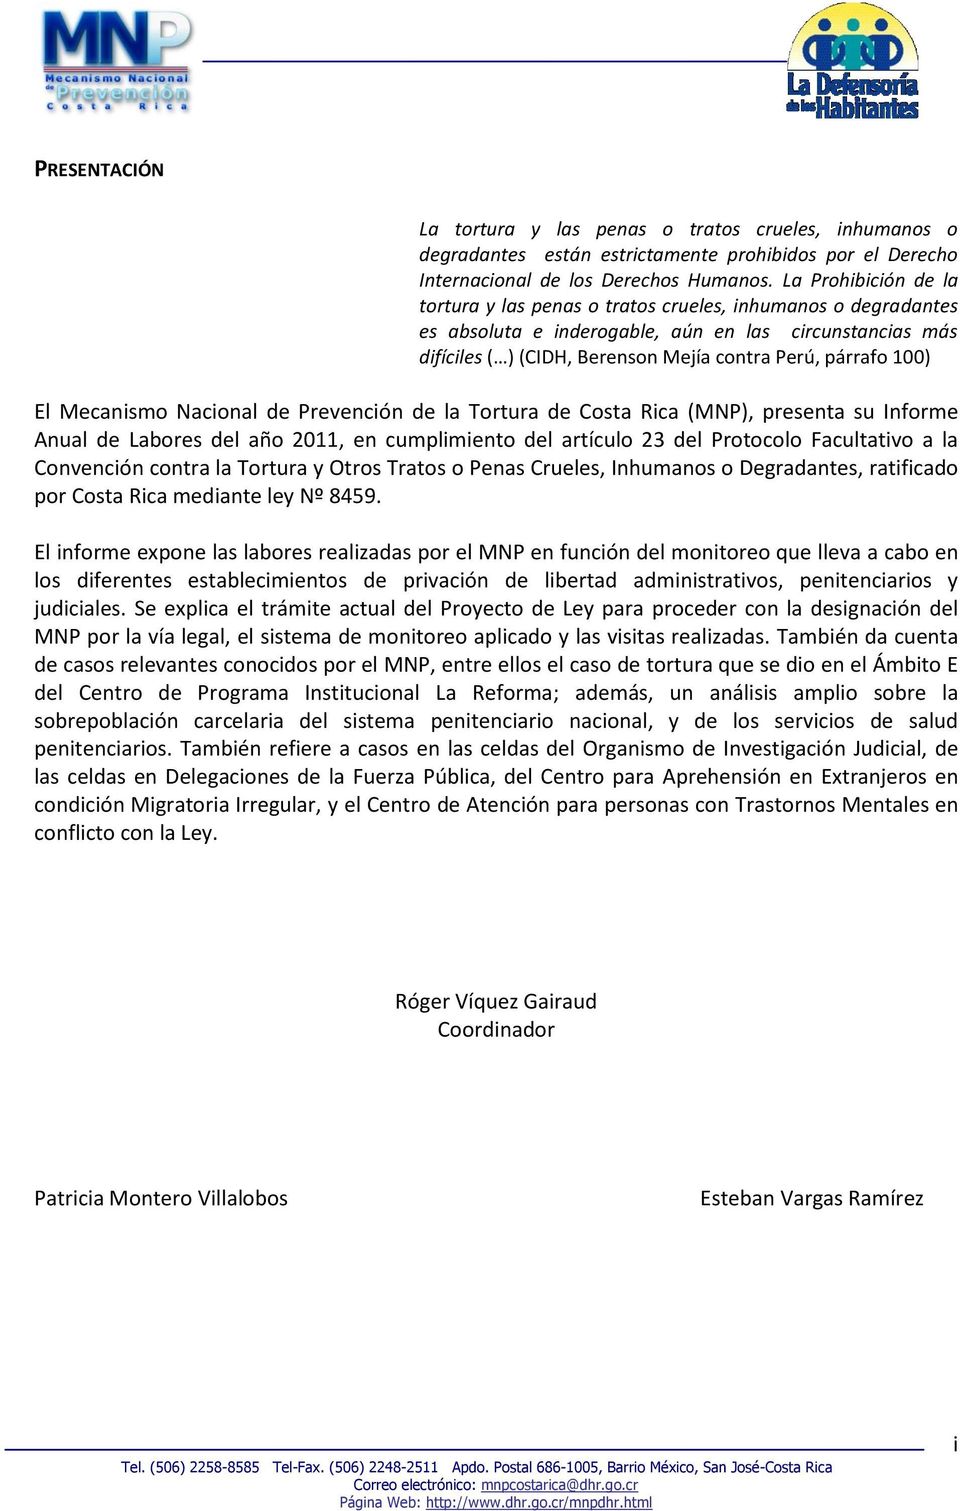 100) El Mecanismo Nacional de Prevención de la Tortura de Costa Rica (MNP), presenta su Informe Anual de Labores del año 2011, en cumplimiento del artículo 23 del Protocolo Facultativo a la